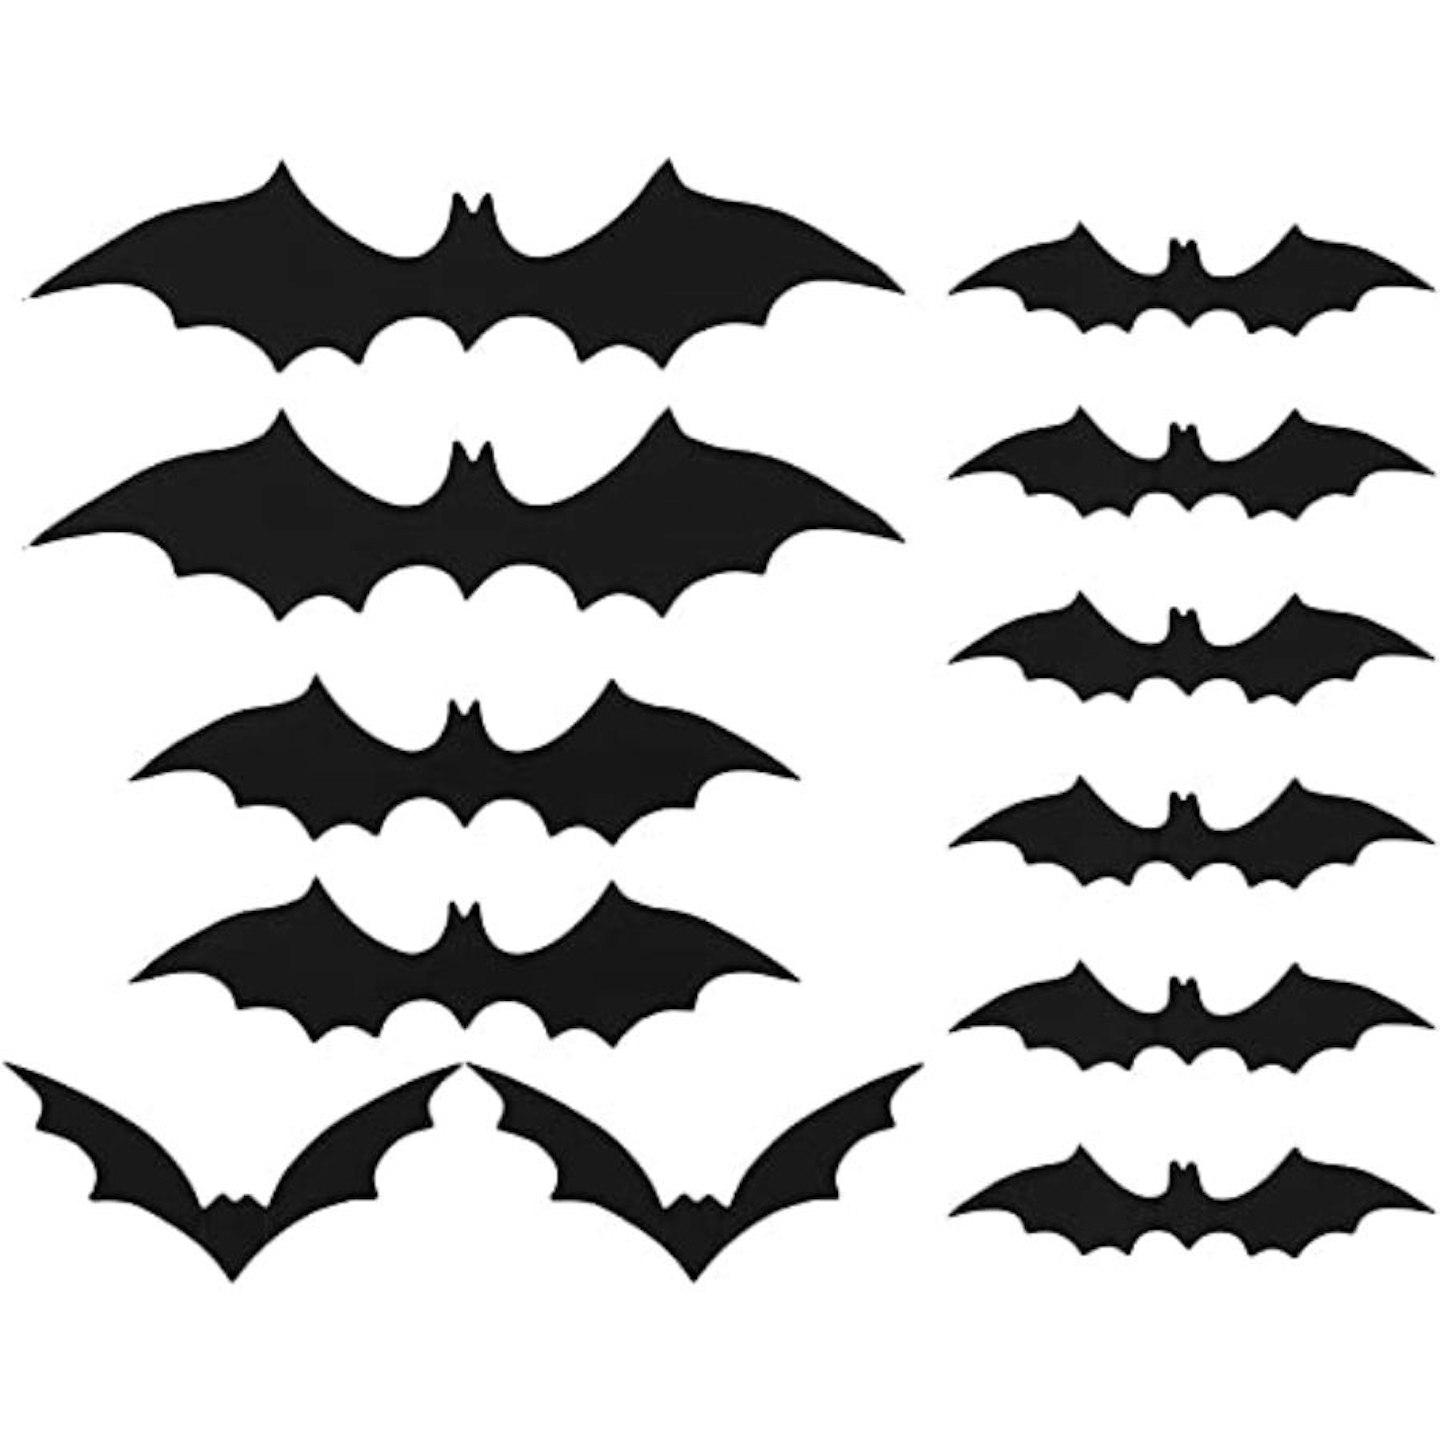 3D Bat Wall Stickers